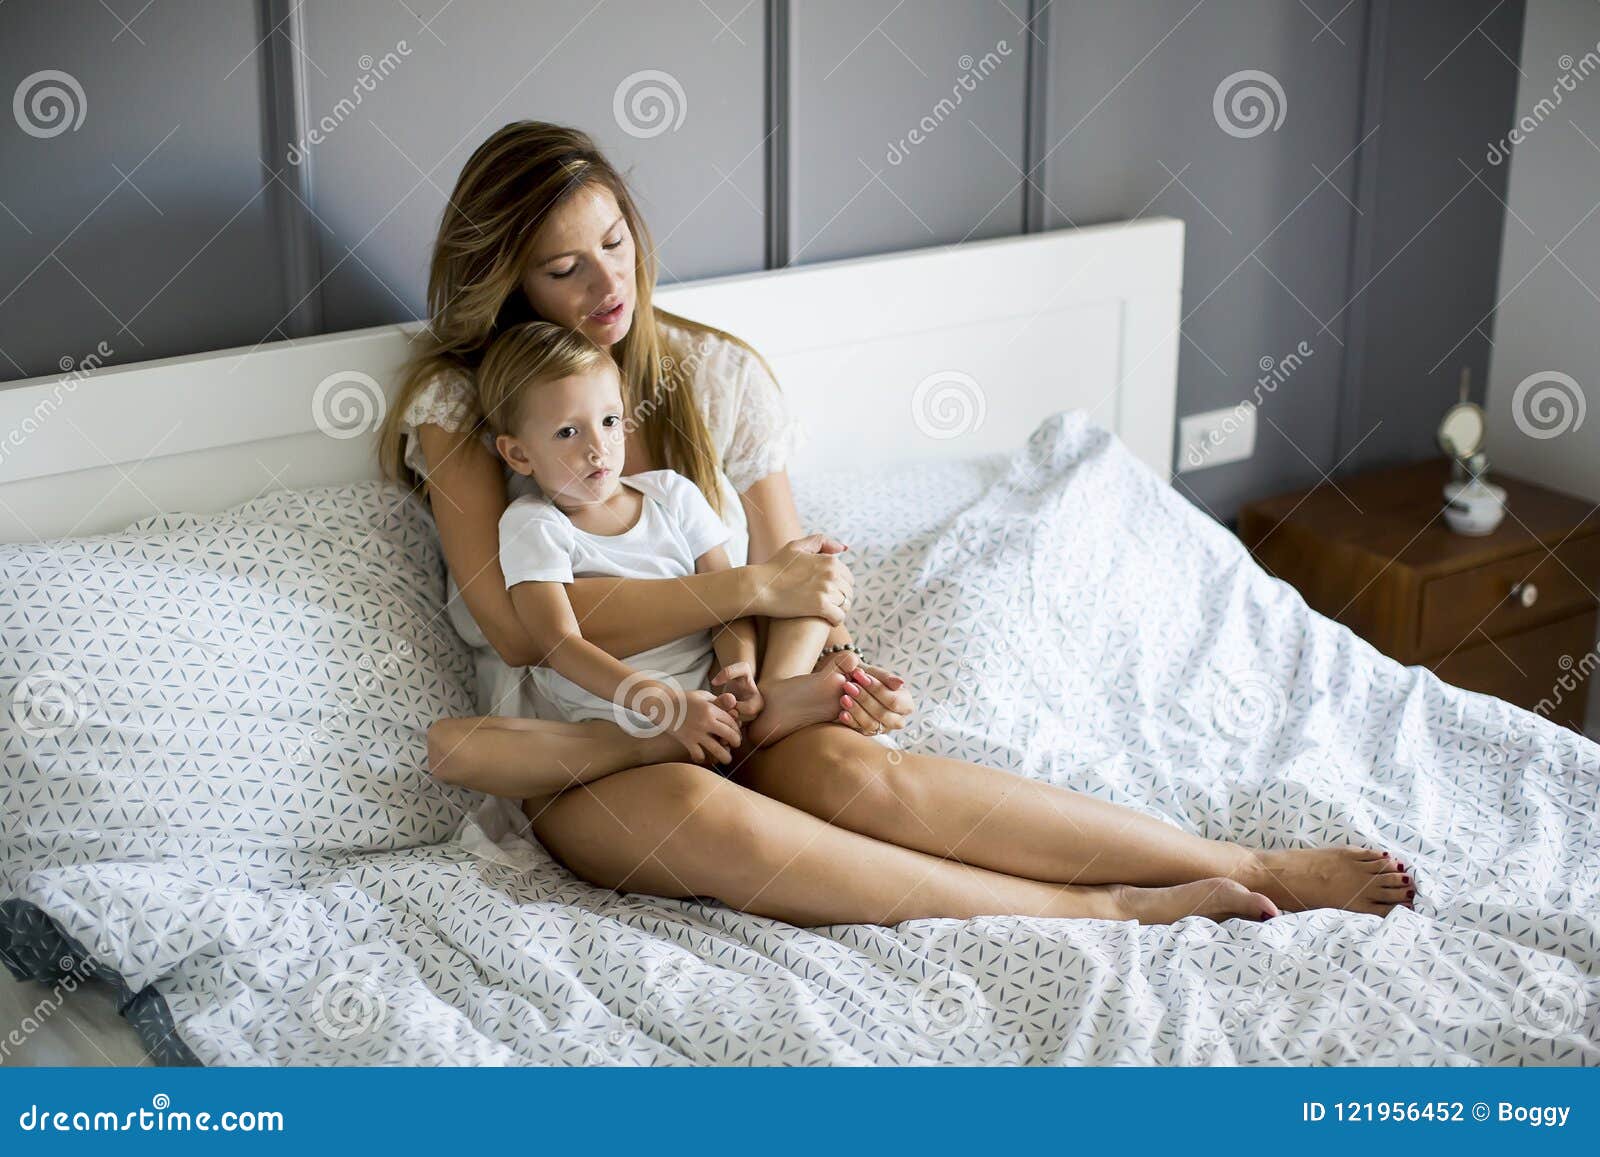 Молодая мама в постели. Молодые мамочки в постели. Фотосессия мама с сыном в постели. Сынишка с мамашей в постели.